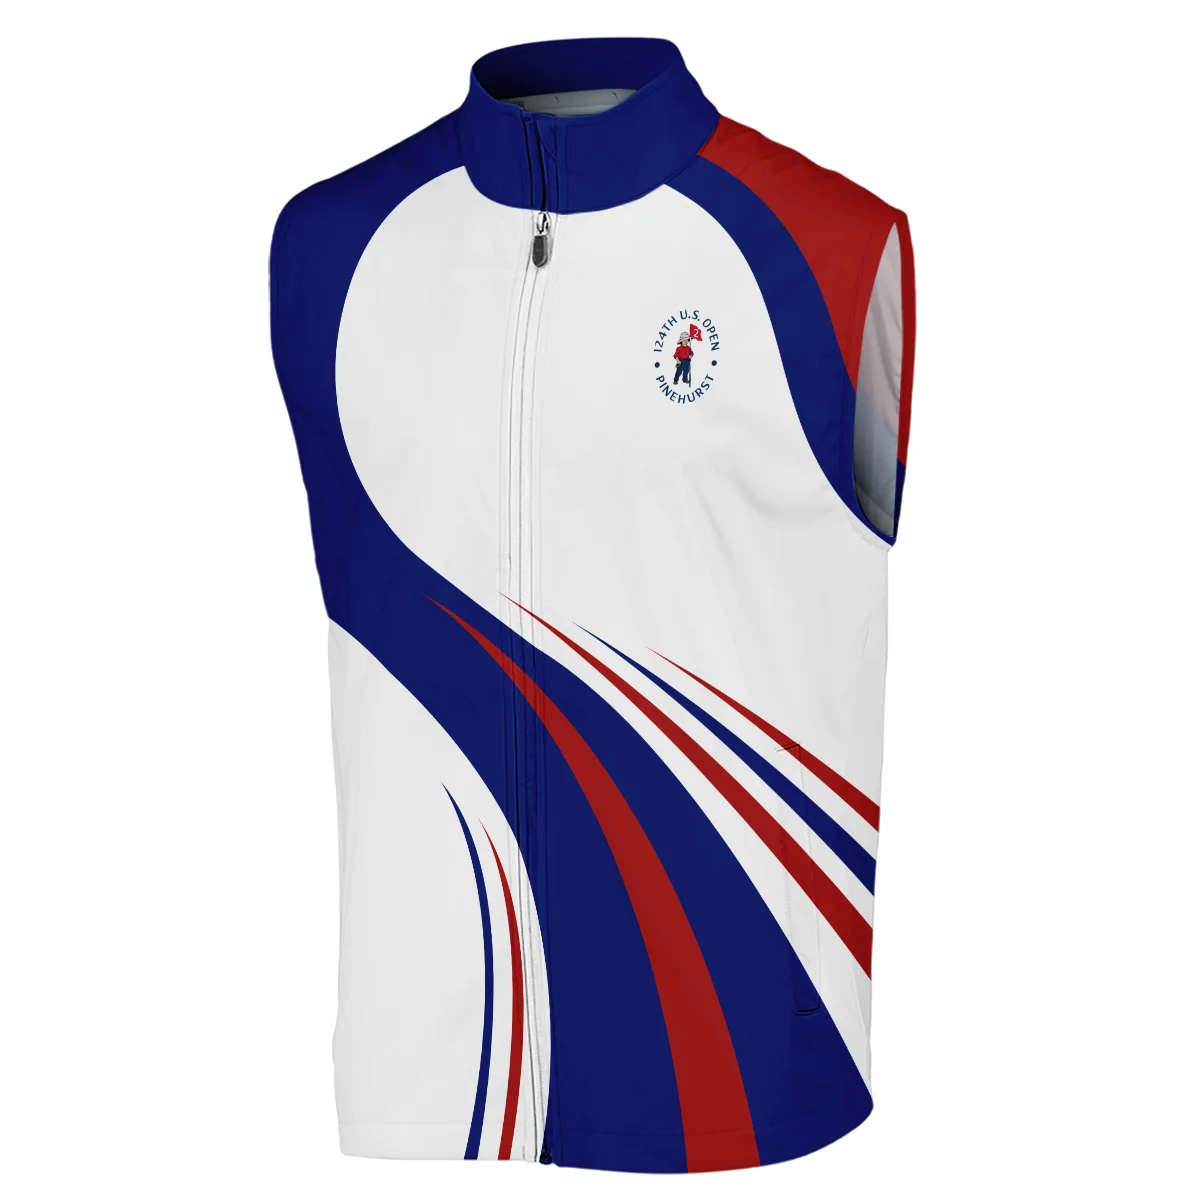 Titleist 124th U.S. Open Pinehurst Golf Blue Red White Background Sleeveless Jacket Style Classic Sleeveless Jacket